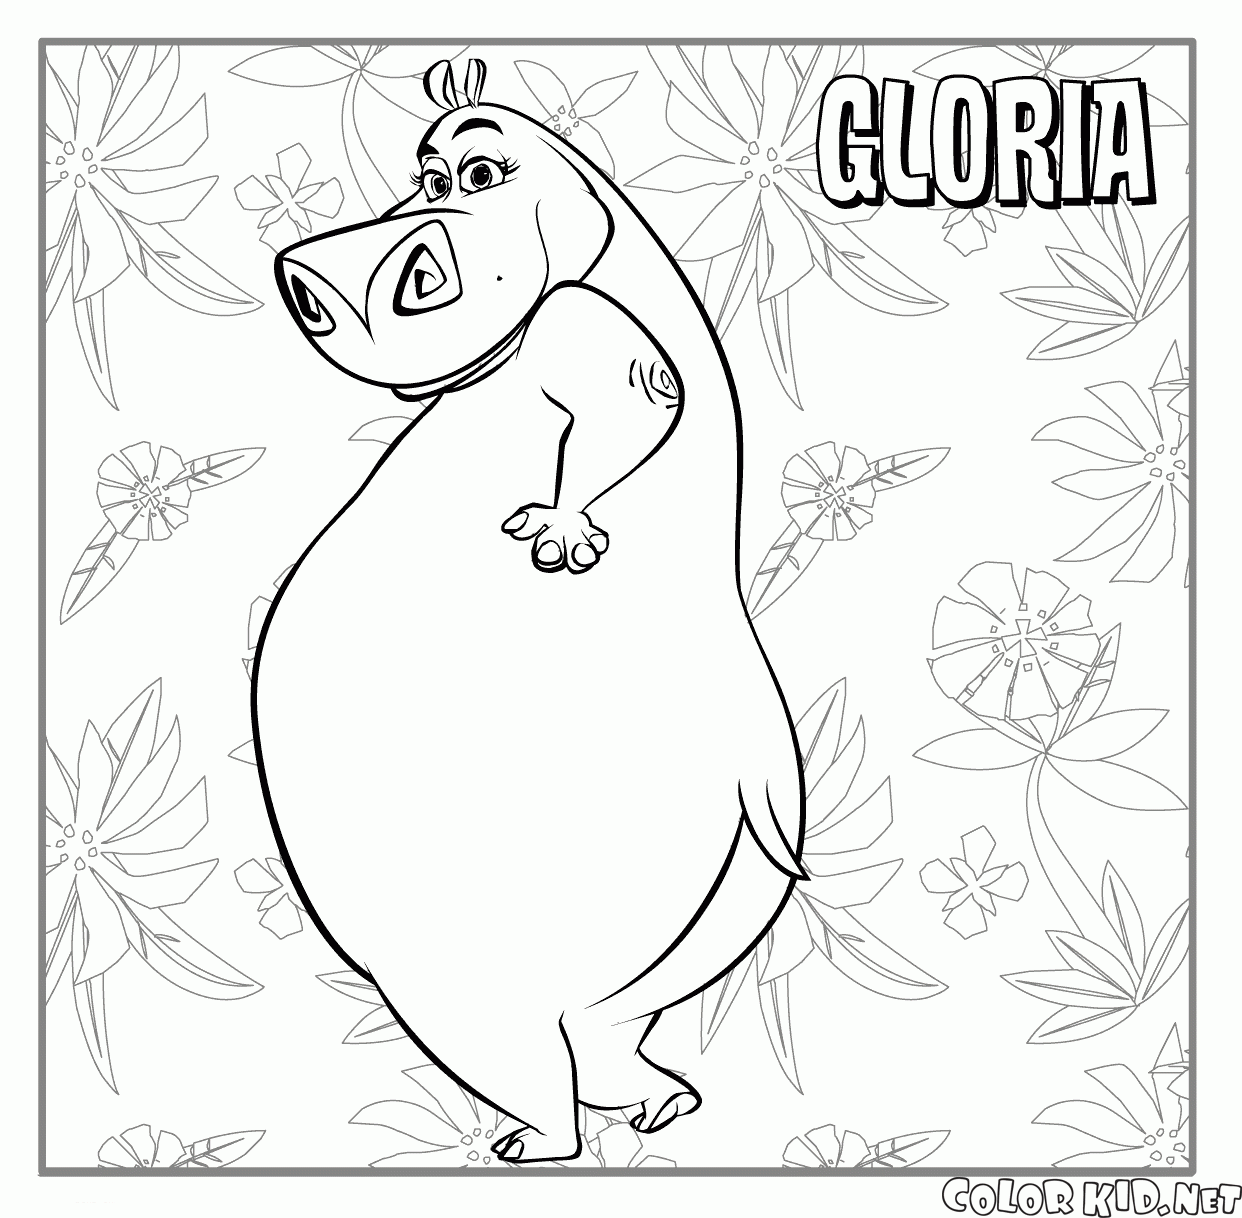 Gloria in the Jungle